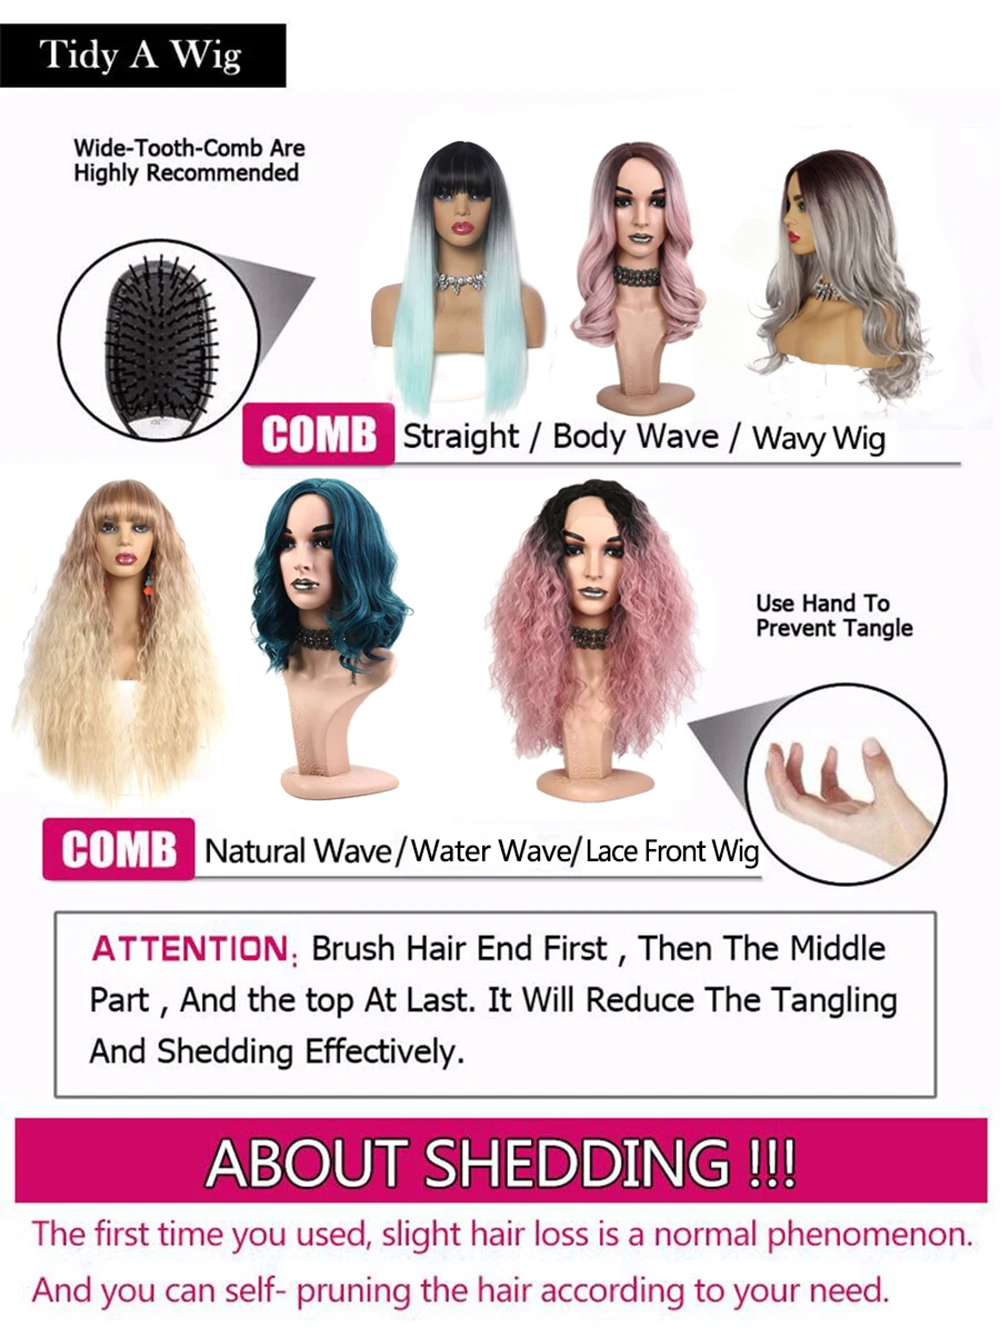 Suri Hair 24 ''Длинные Синтетические волосы на заколках для наращивания, волосы для наращивания с эффектом омбре, волнистые, блонд, коричневый, для черных женщин, 5 клипсов, шиньоны